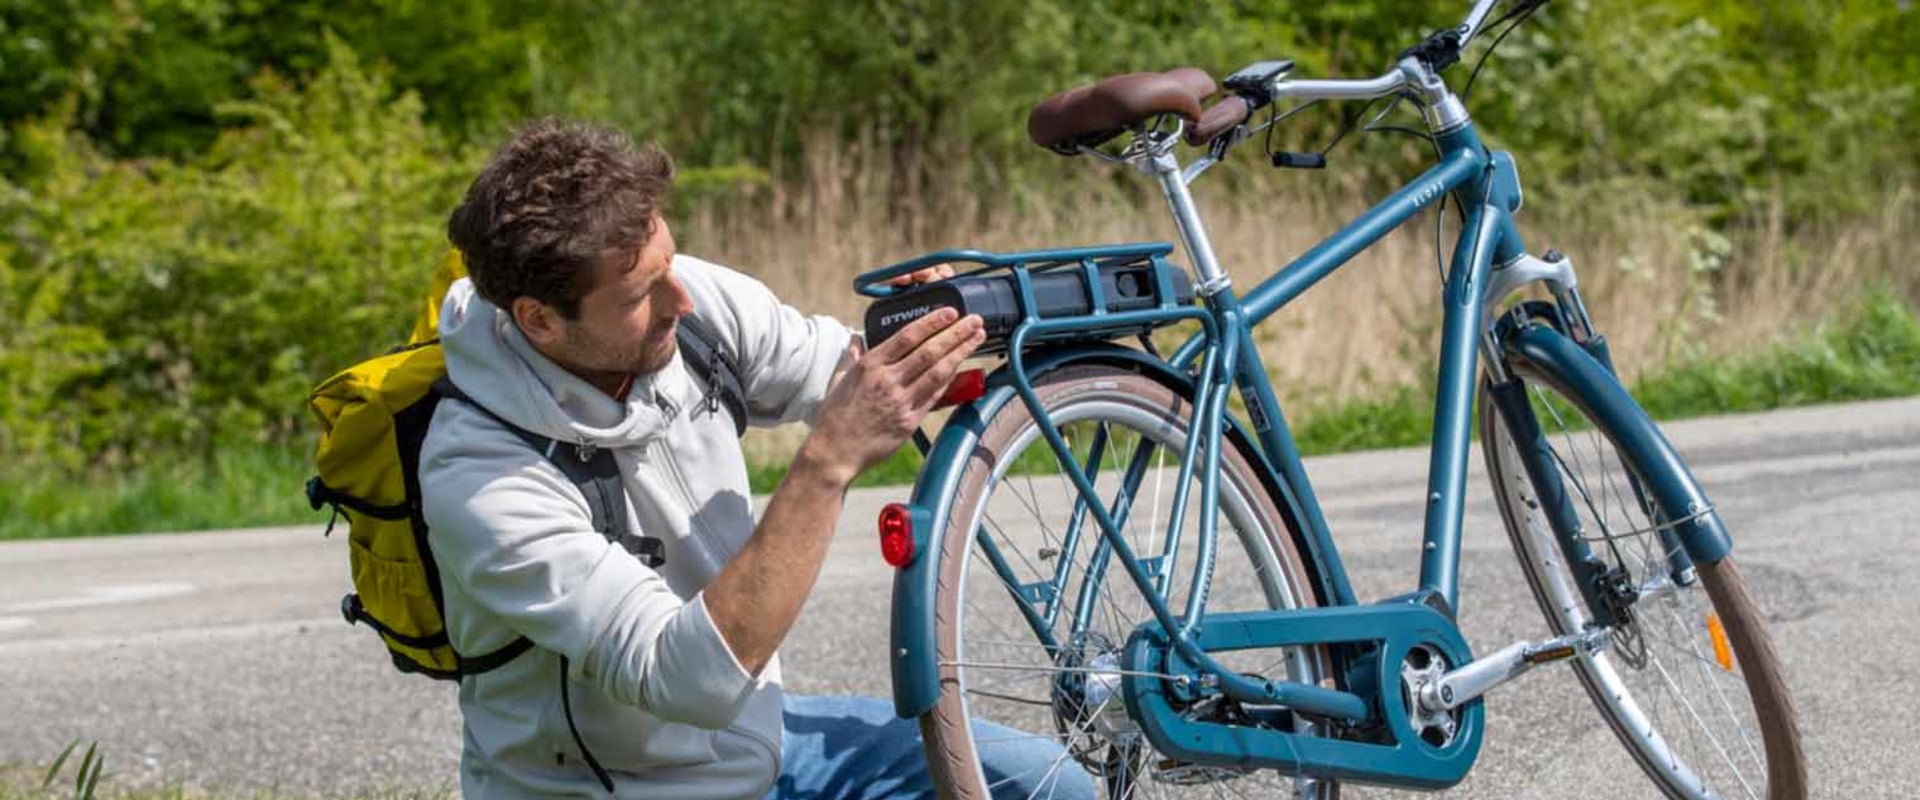 Kun je op een elektrische fiets rijden zonder stroom?